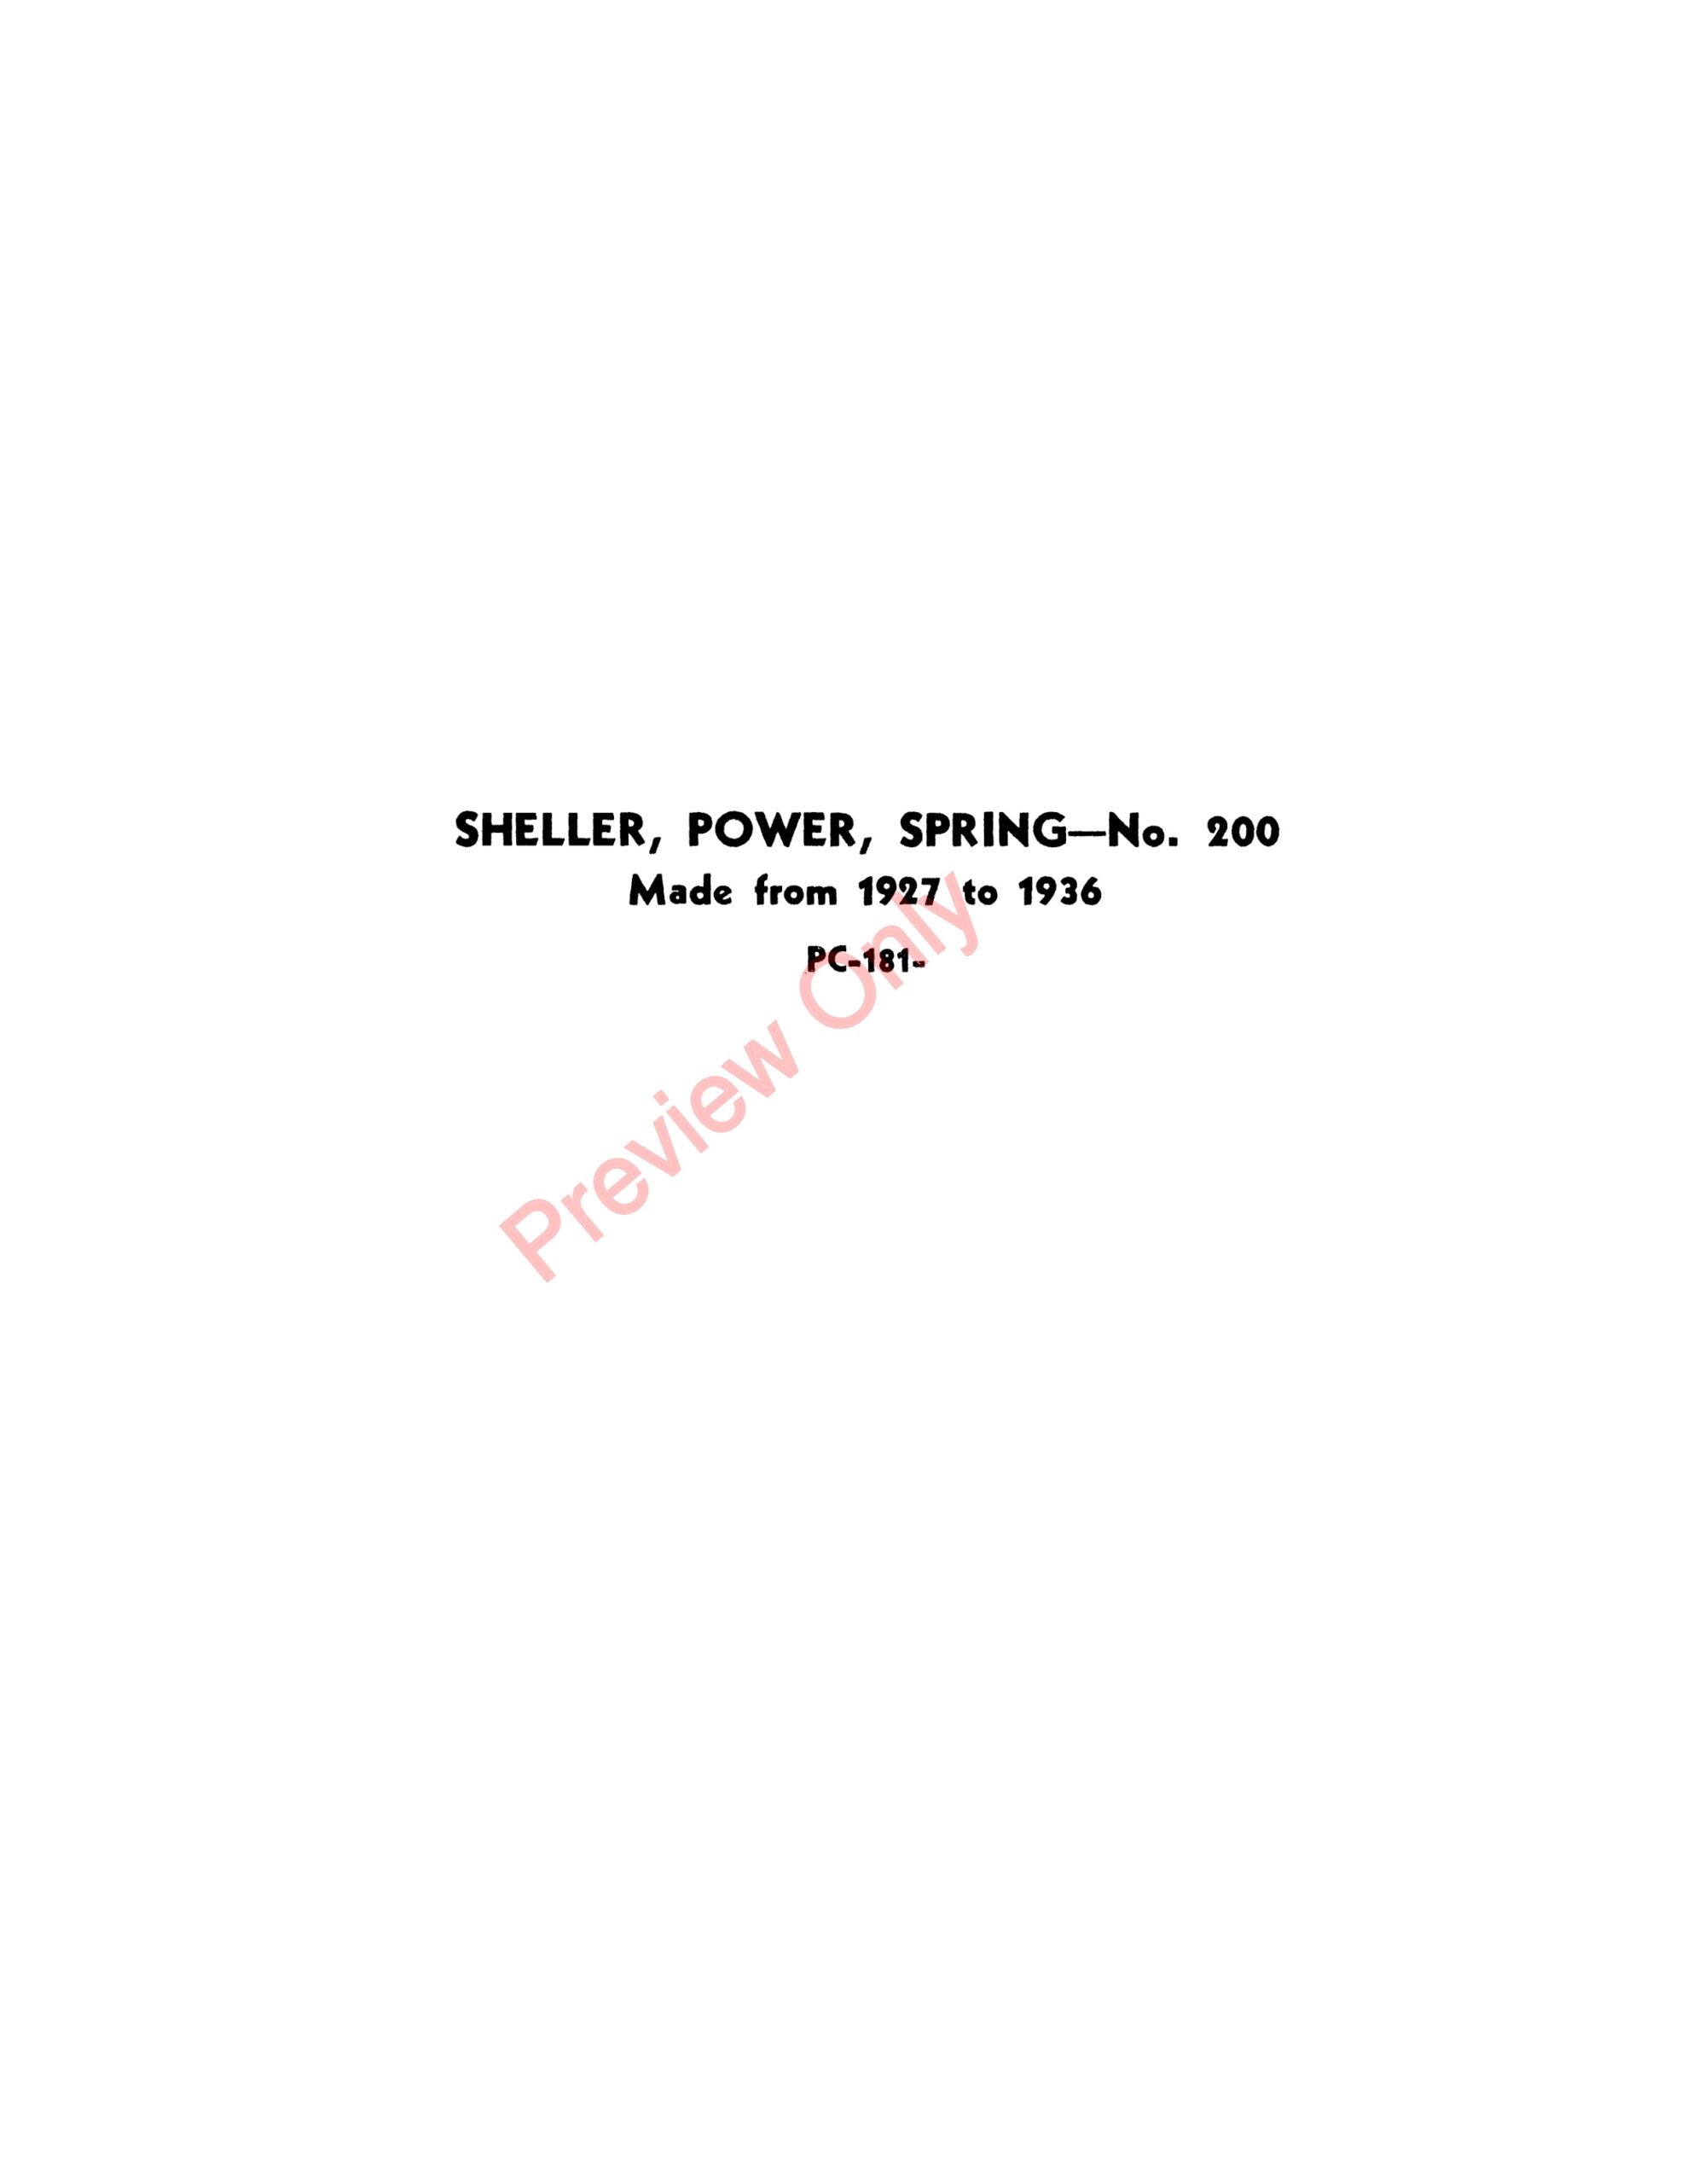 John Deere Spring Power Sheller – No. 200 Parts Catalog PC181 01MAY51-1